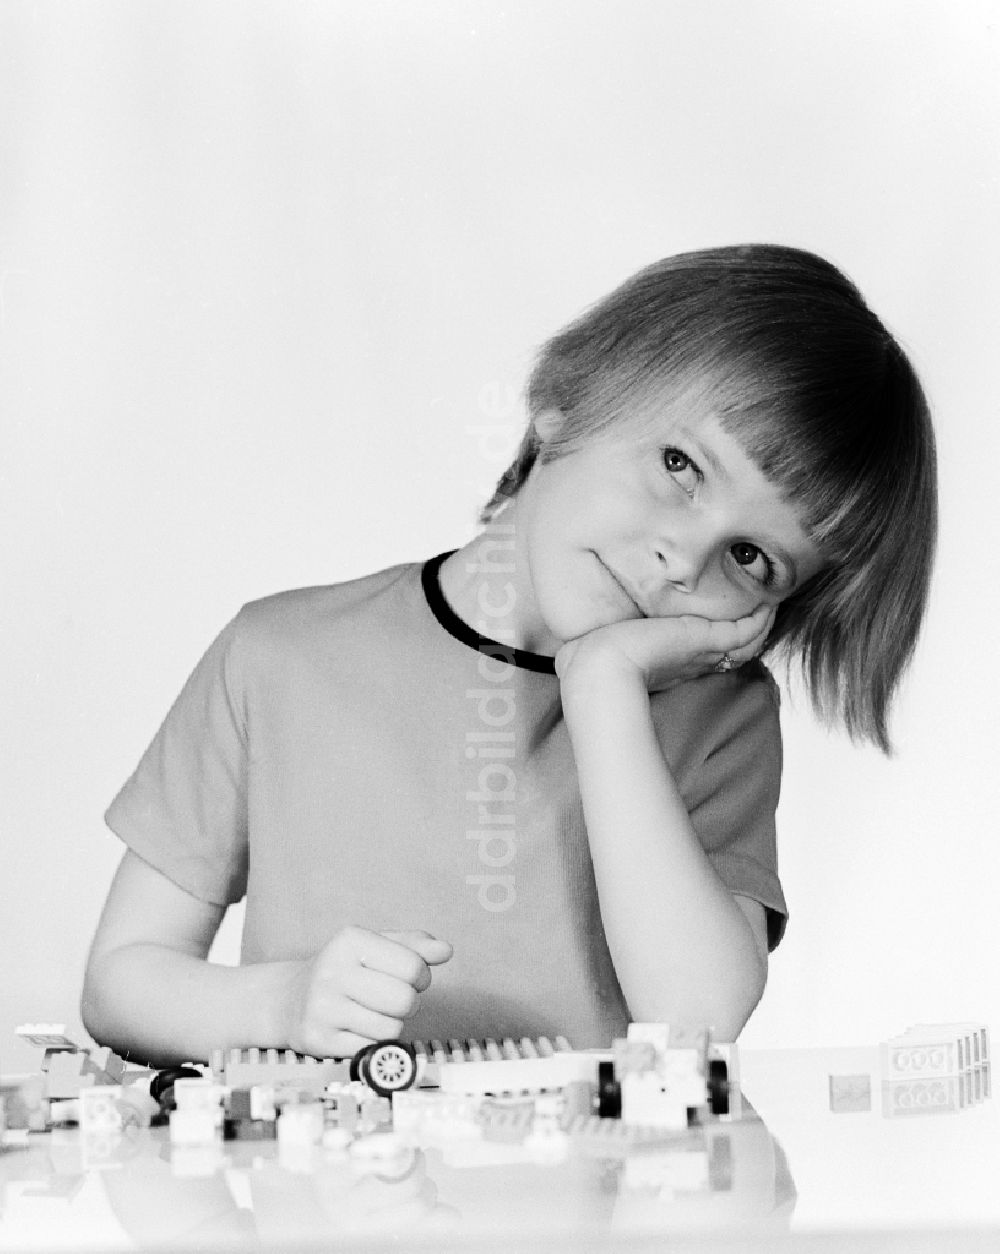 DDR-Bildarchiv: Berlin - Ein kleines Kind spielt mit Plastik Bausteinen in Berlin, der ehemaligen Hauptstadt der DDR, Deutsche Demokratische Republik